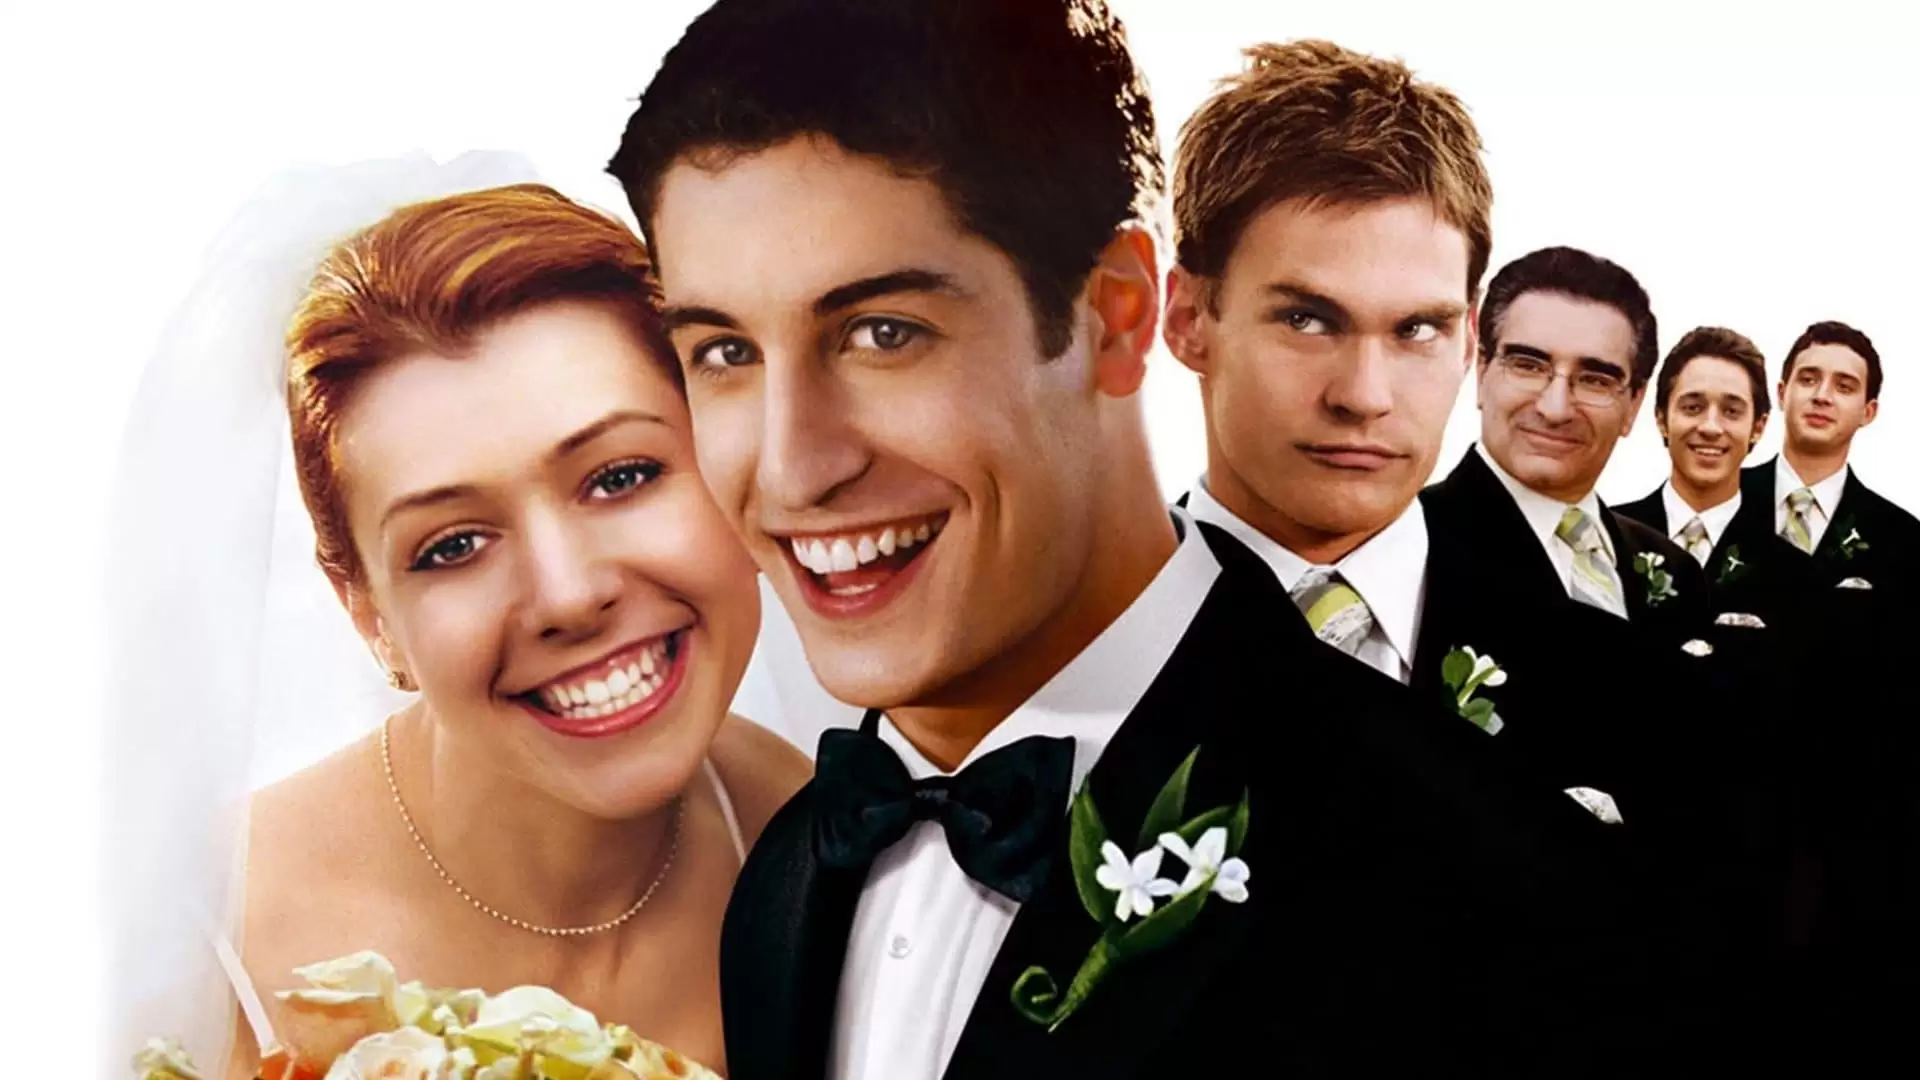 دانلود فیلم American Wedding 2003 (عروسی آمریکایی) با زیرنویس فارسی و تماشای آنلاین